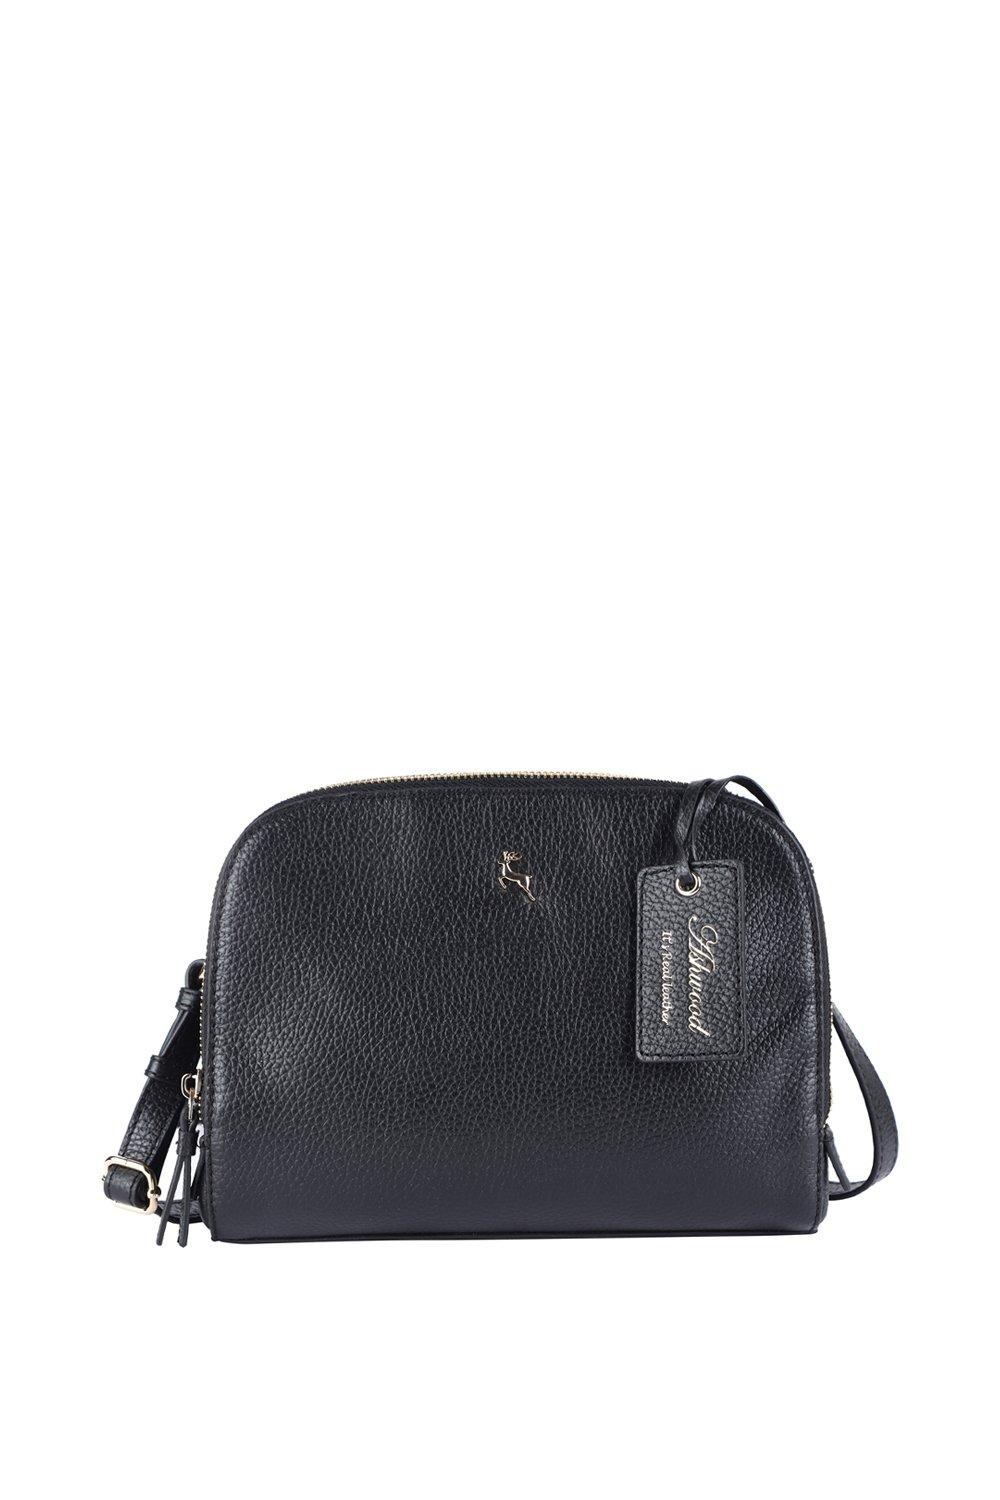 'Классическая' кожаная трехсекционная сумка через плечо Ashwood Leather, черный